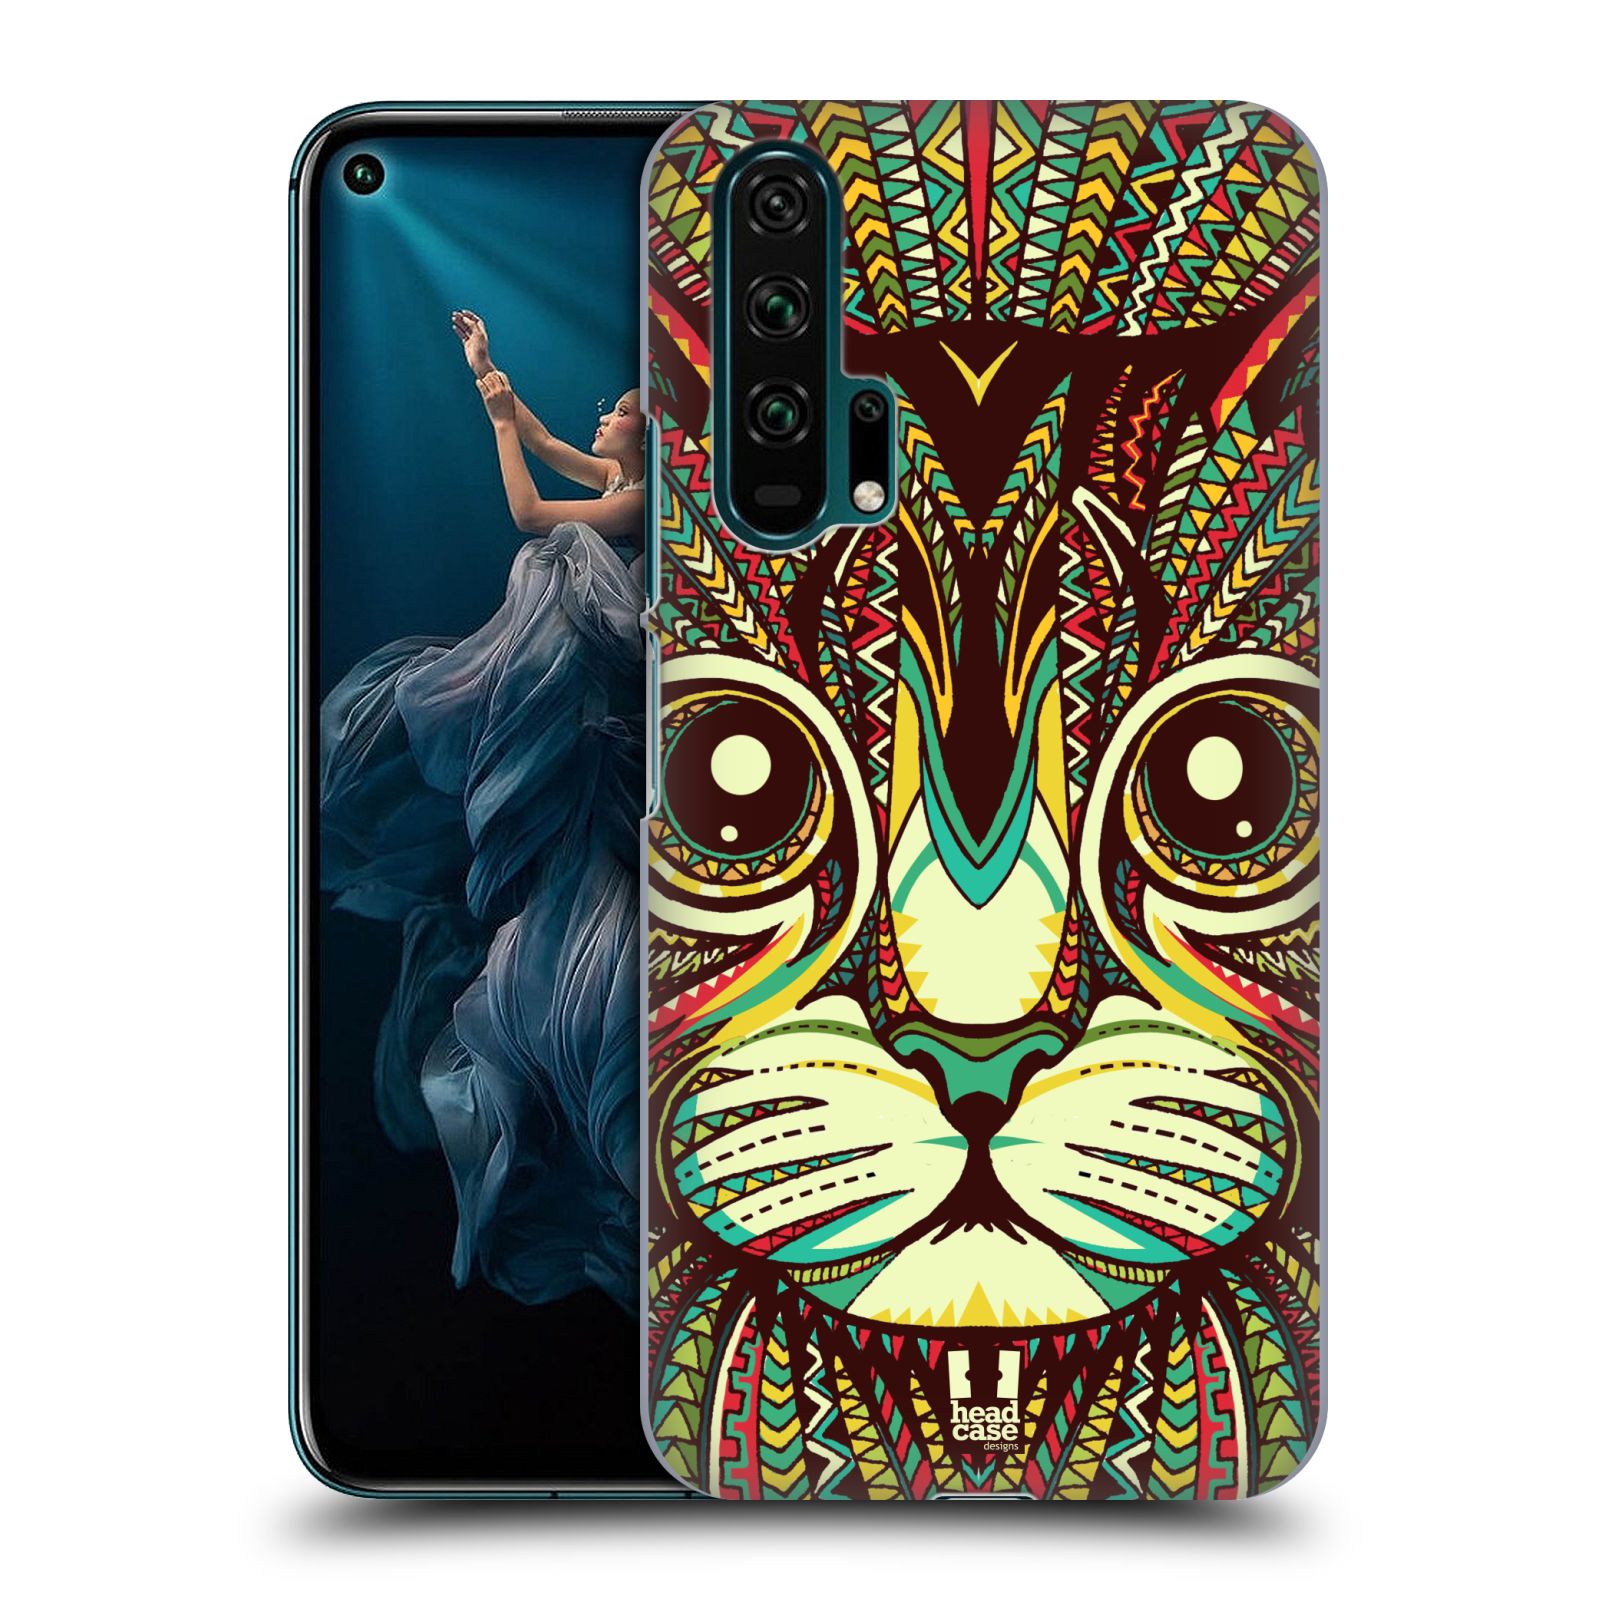 Pouzdro na mobil Honor 20 PRO - HEAD CASE - vzor Aztécký motiv zvíře 2 kotě